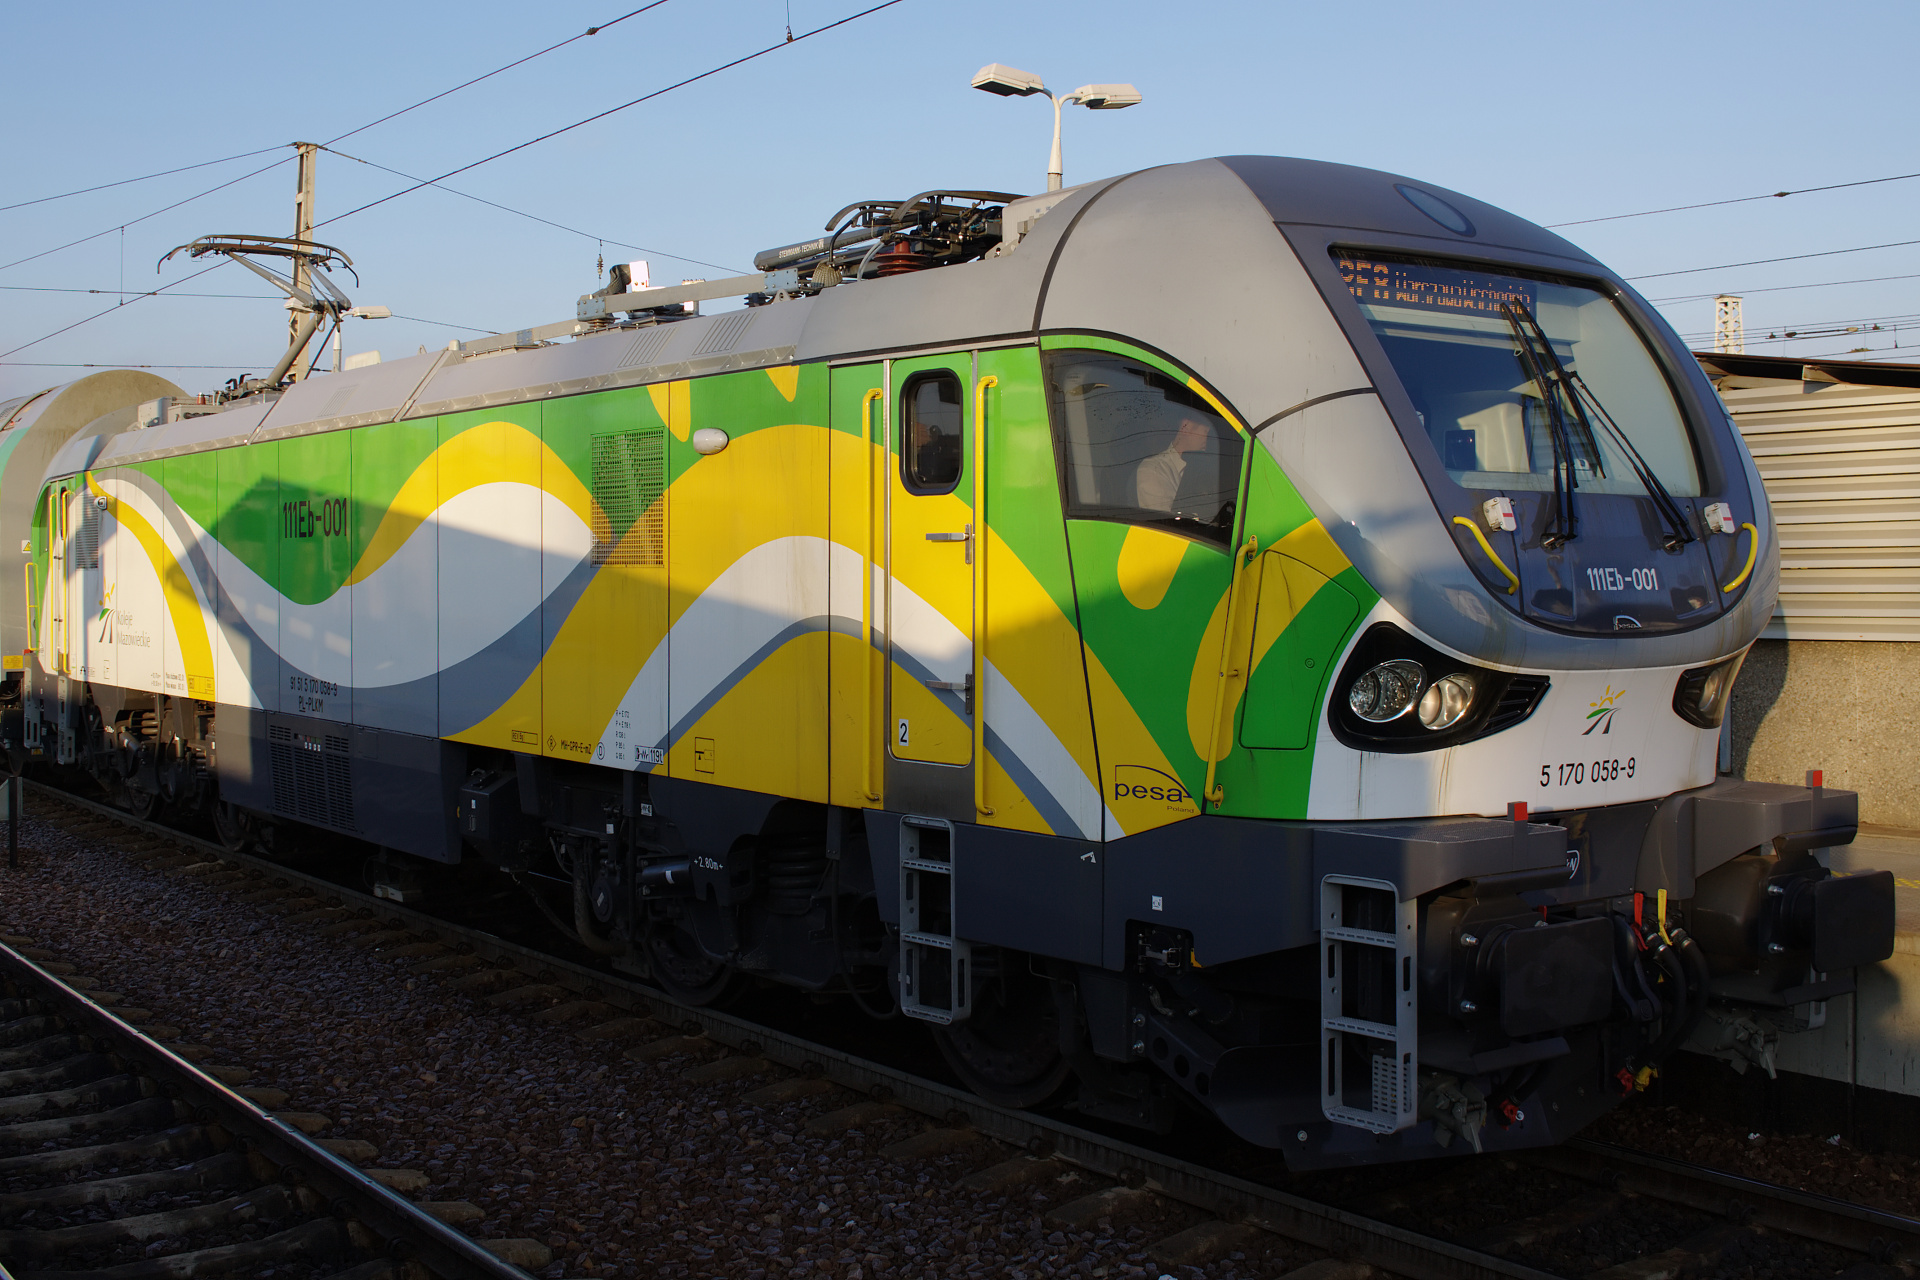 111Eb-001 (Pojazdy » Pociągi i lokomotywy » Pesa Gama)